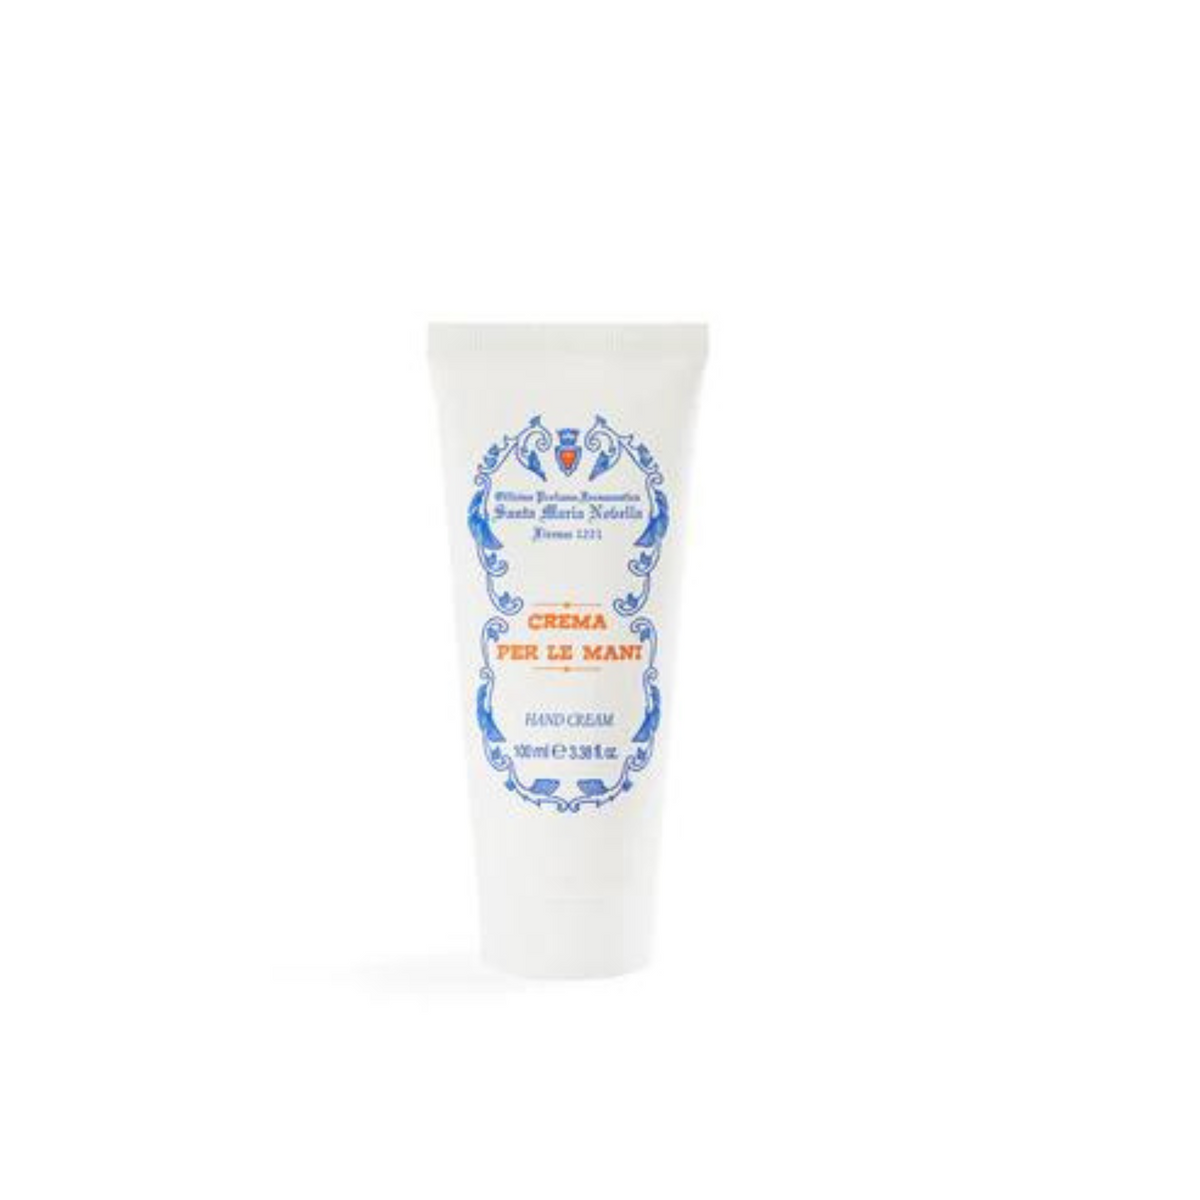 Primary Image of Hand Cream (Crema per le Mani) 